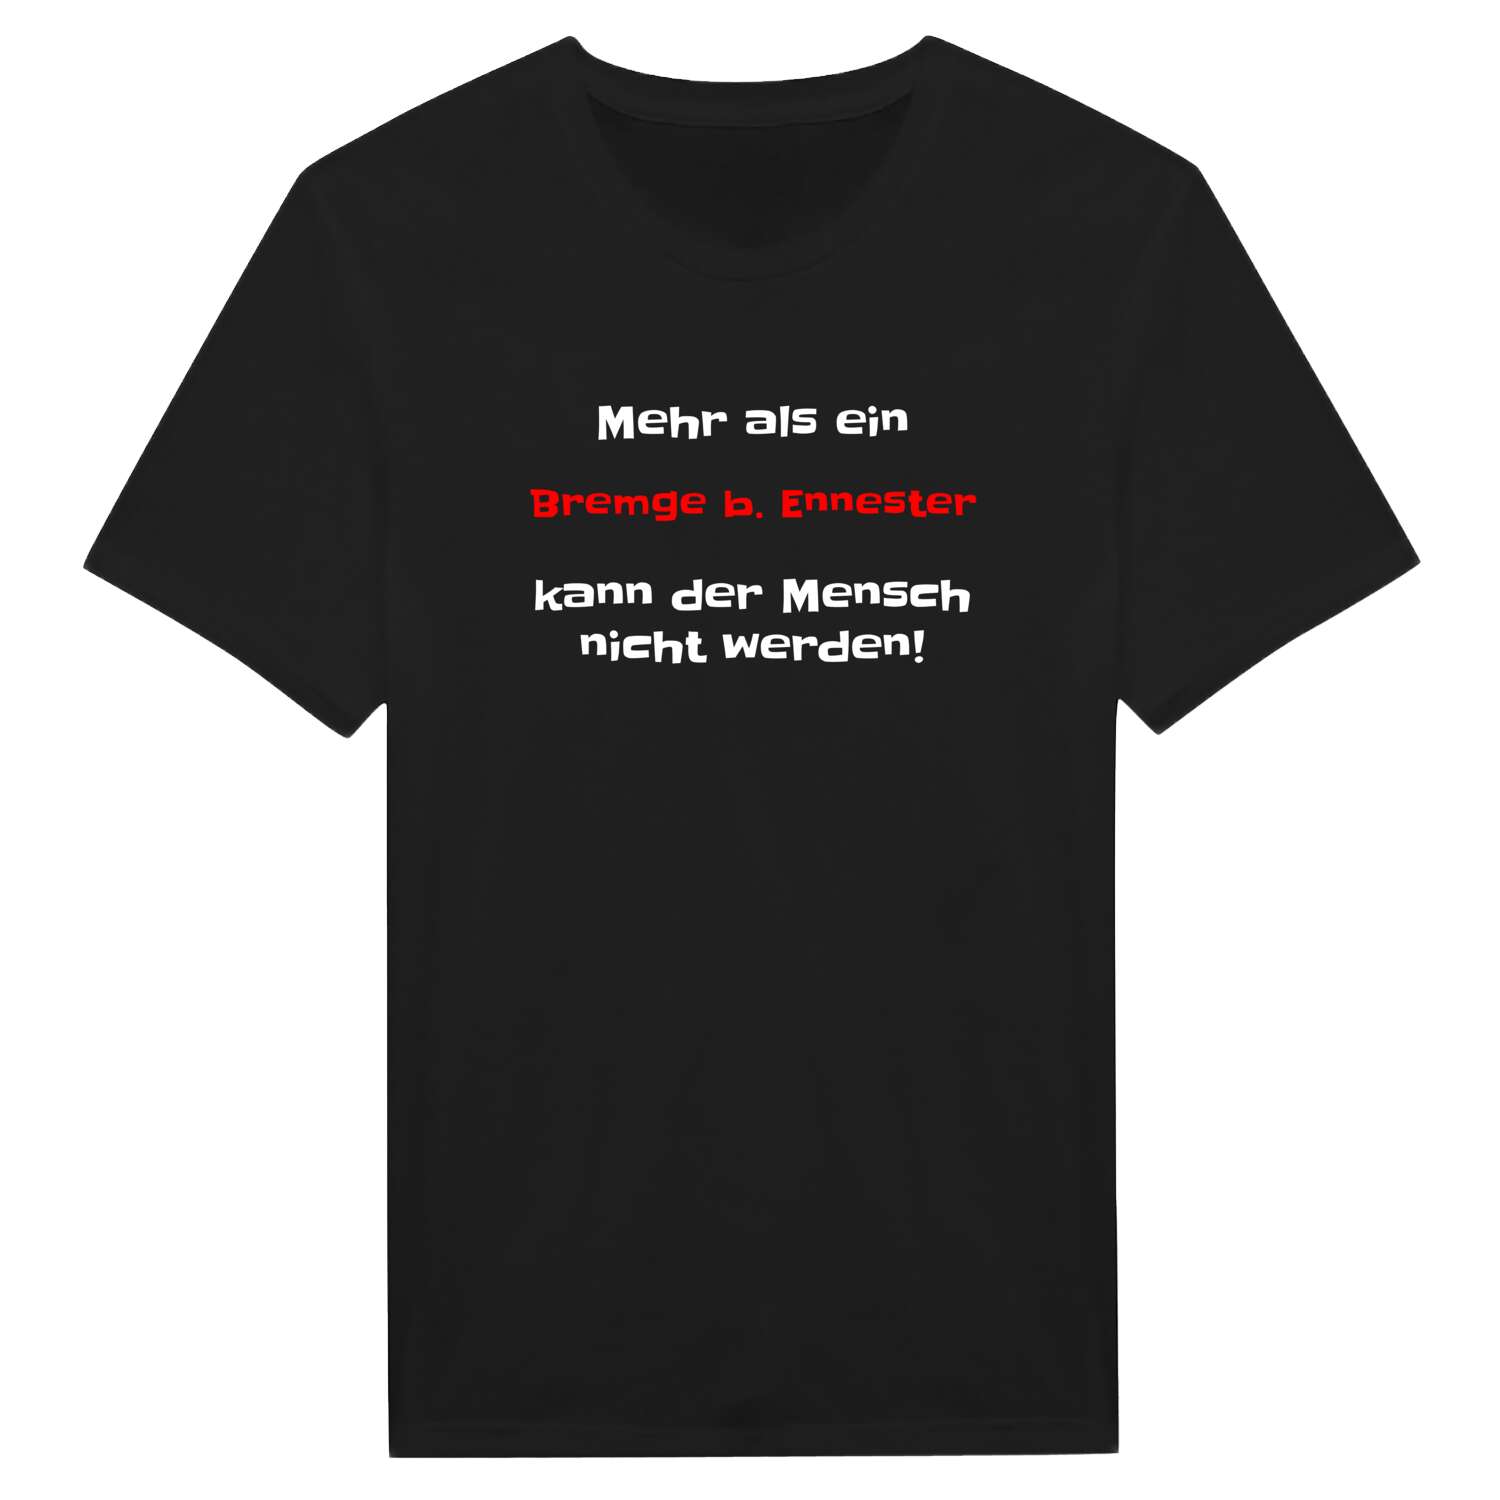 Bremge b. Ennest T-Shirt »Mehr als ein«